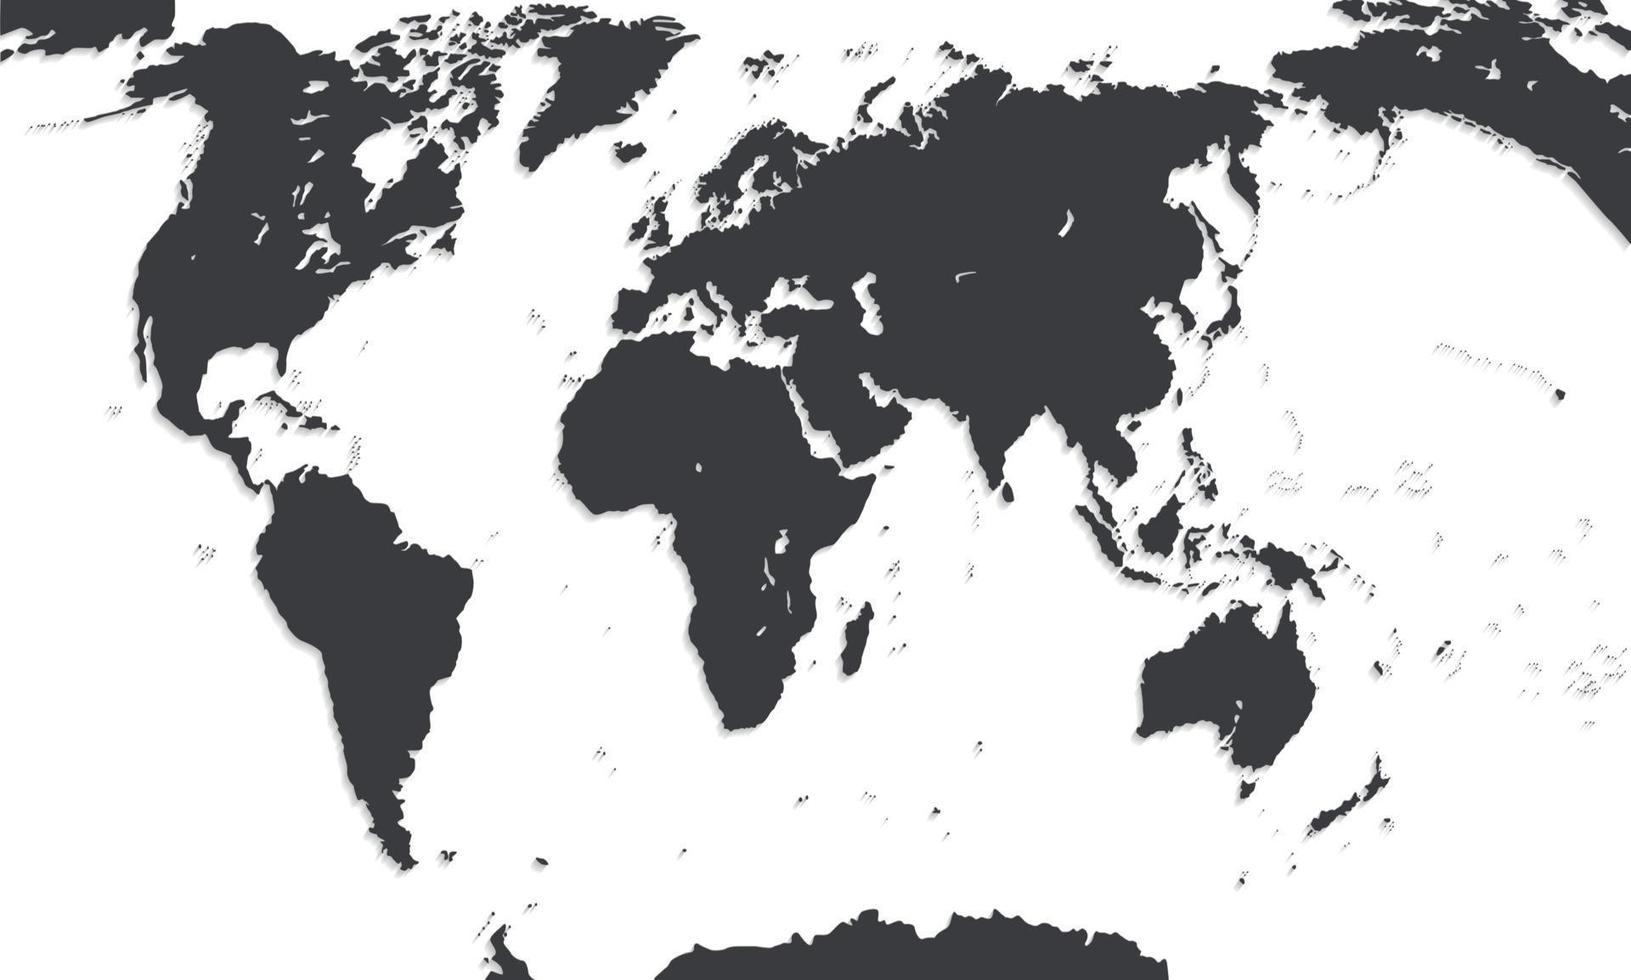 mapa del mundo. ilustración vectorial. vector